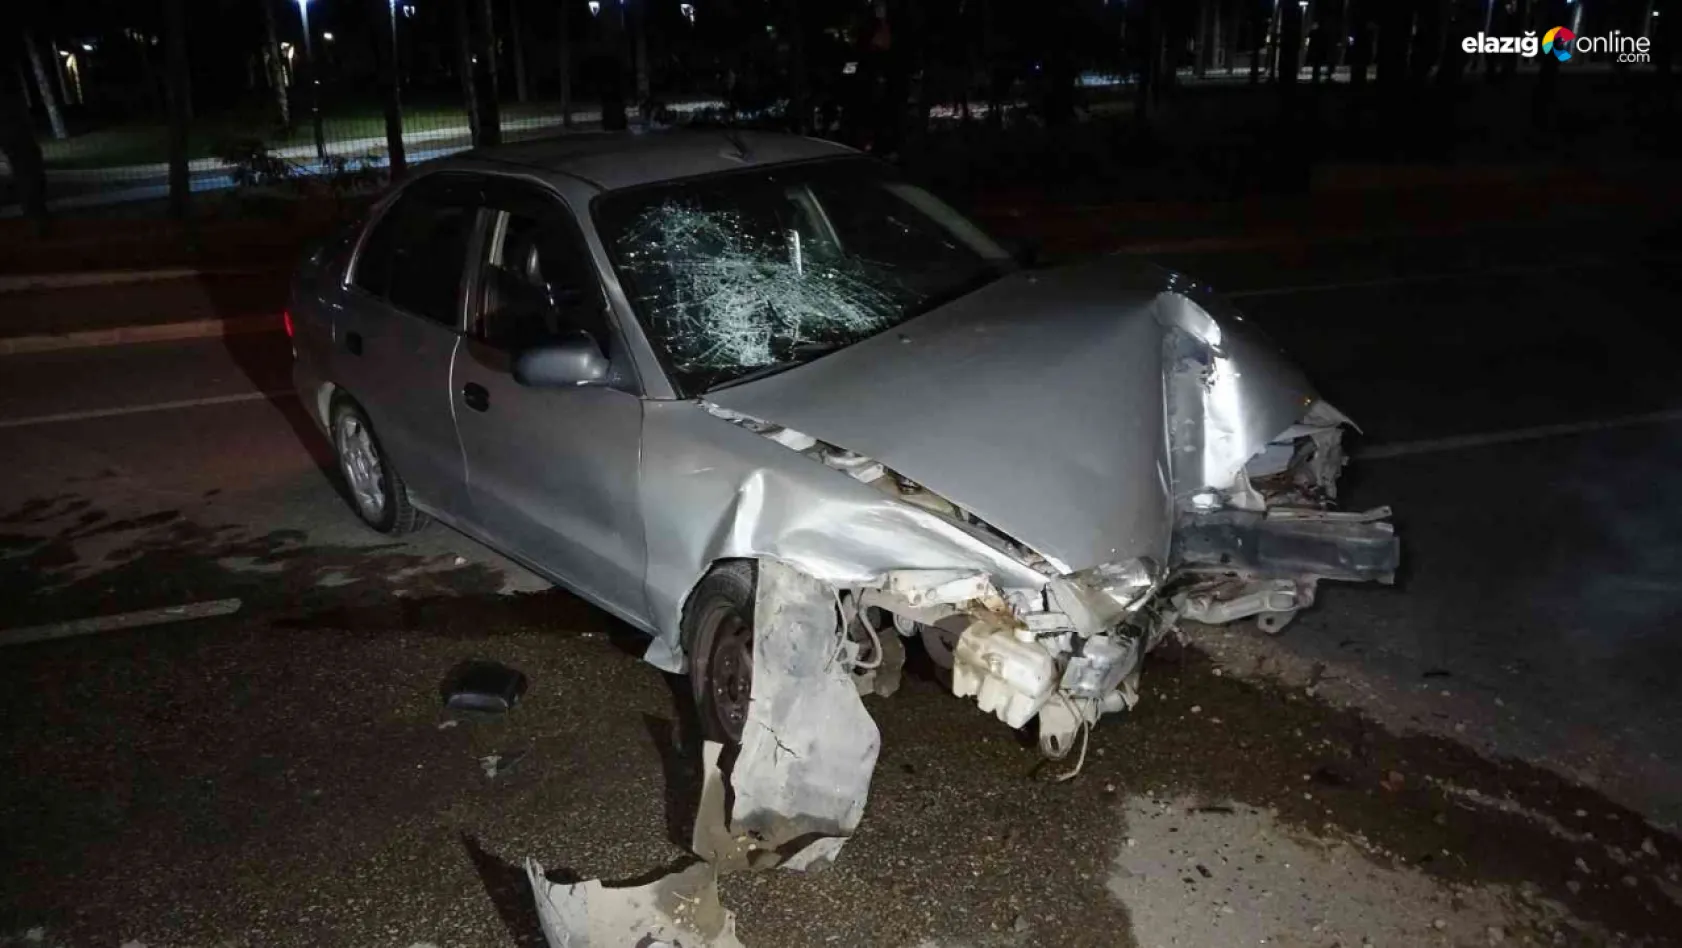 Elazığ'da trafik kazası! Yaşanan kazada, 2'si ağır 5 kişi yaralandı